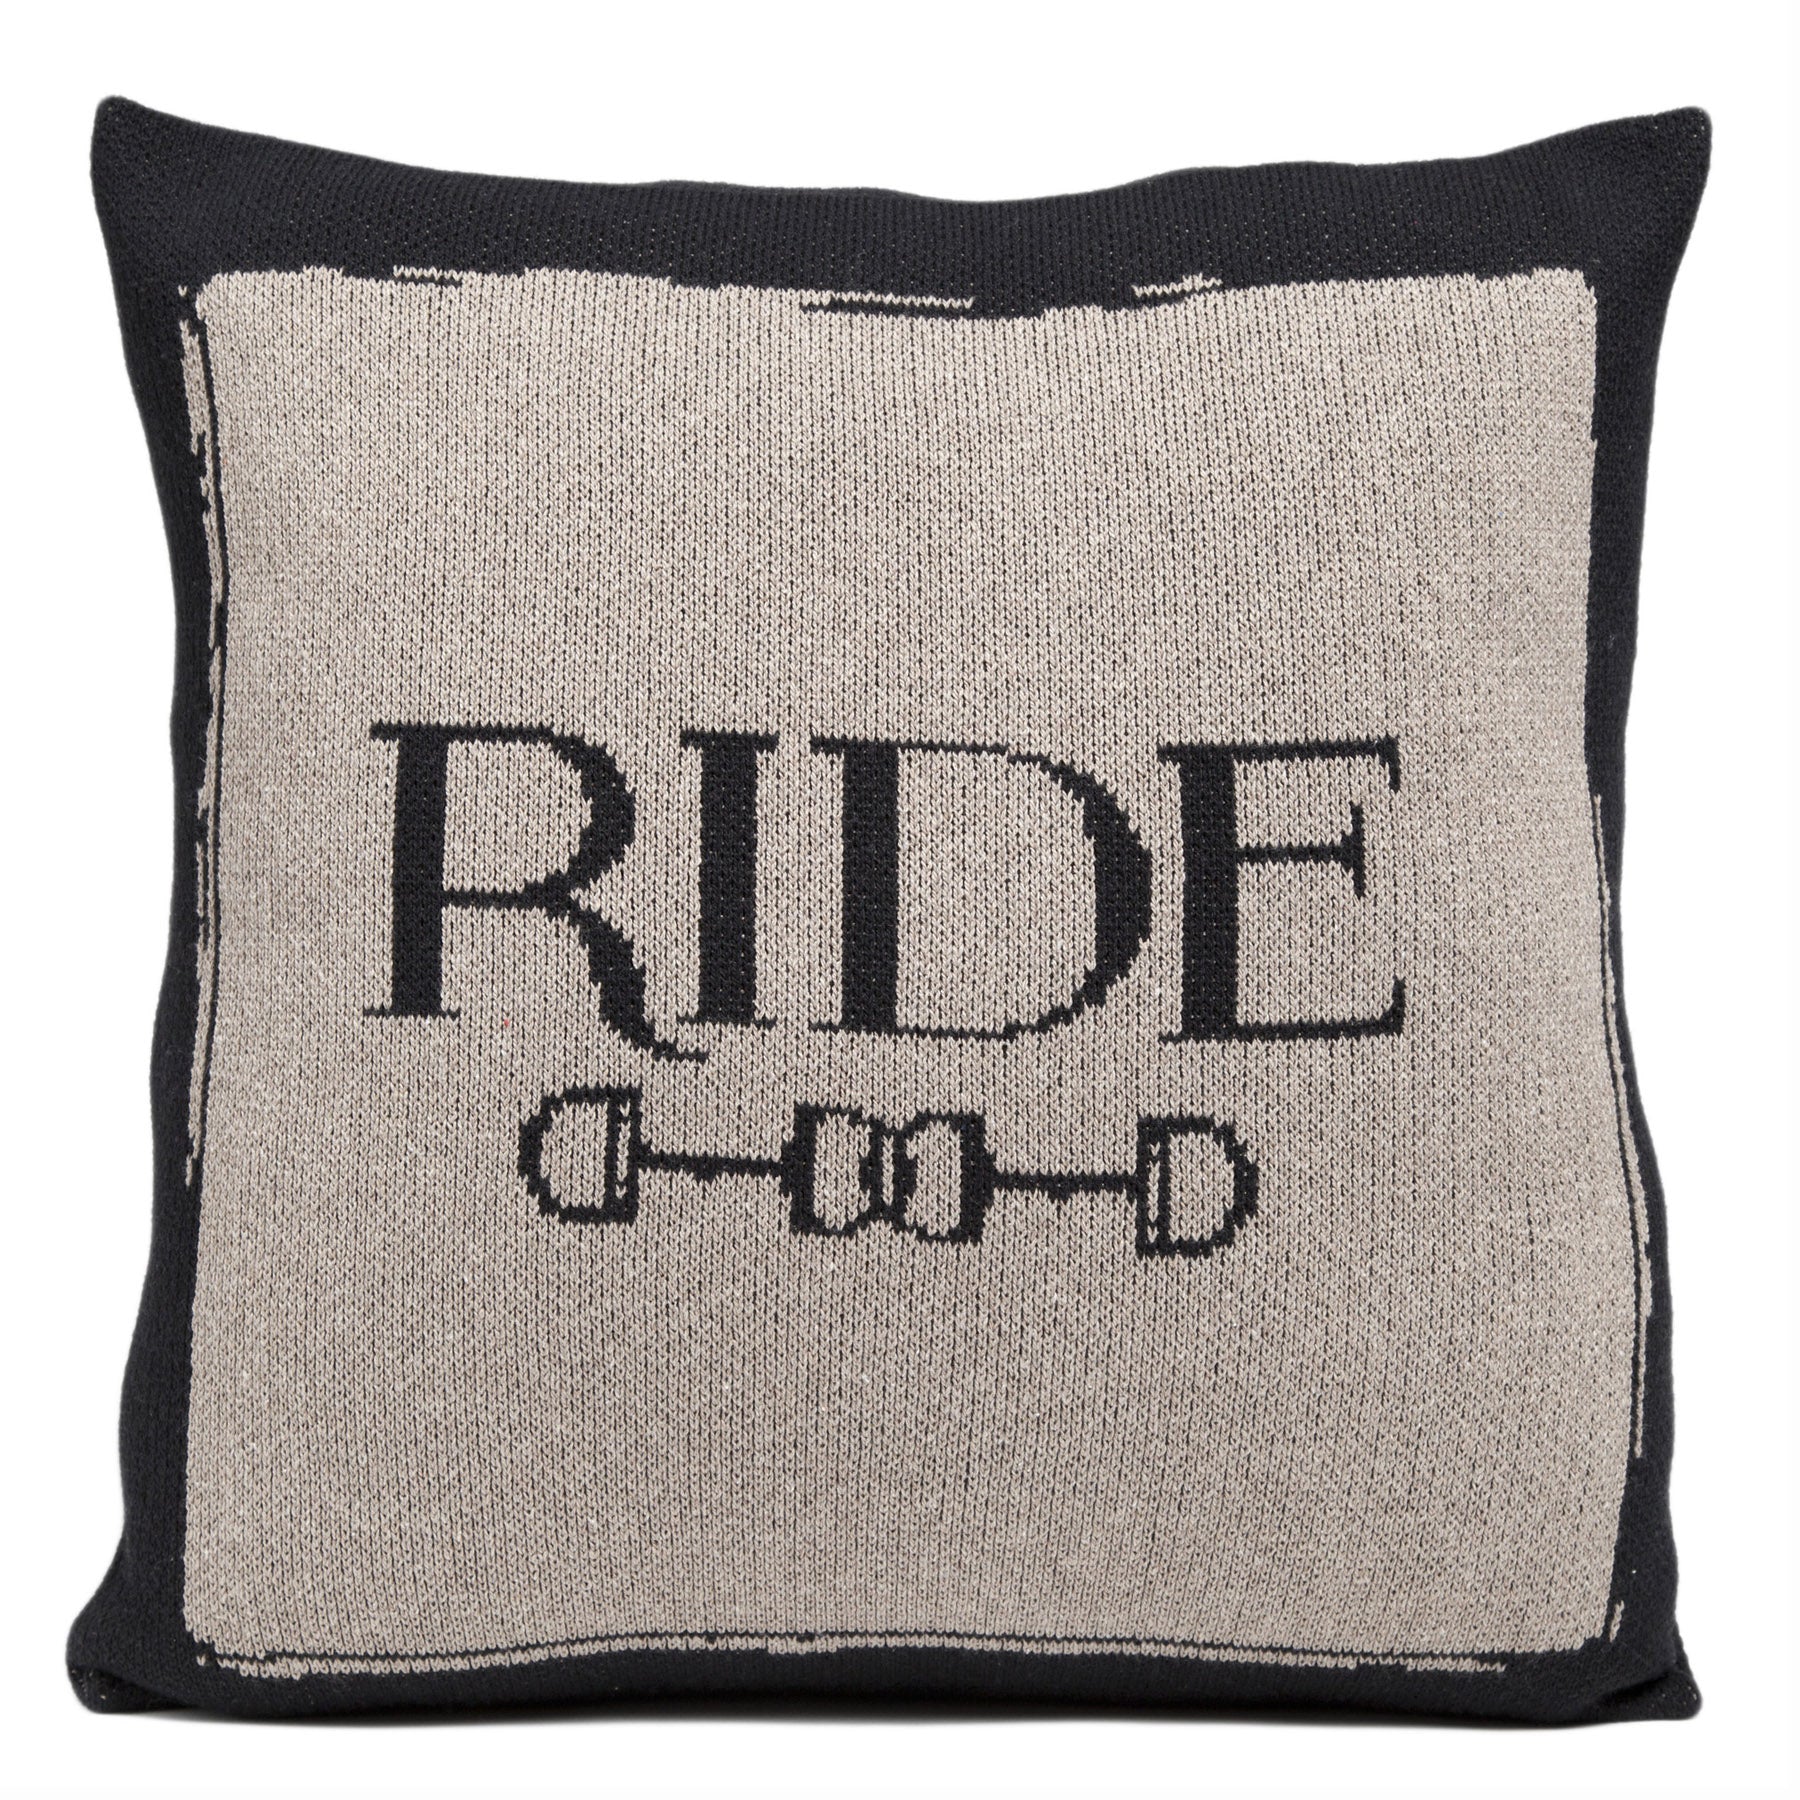 Ride_Pillow_8681.jpg